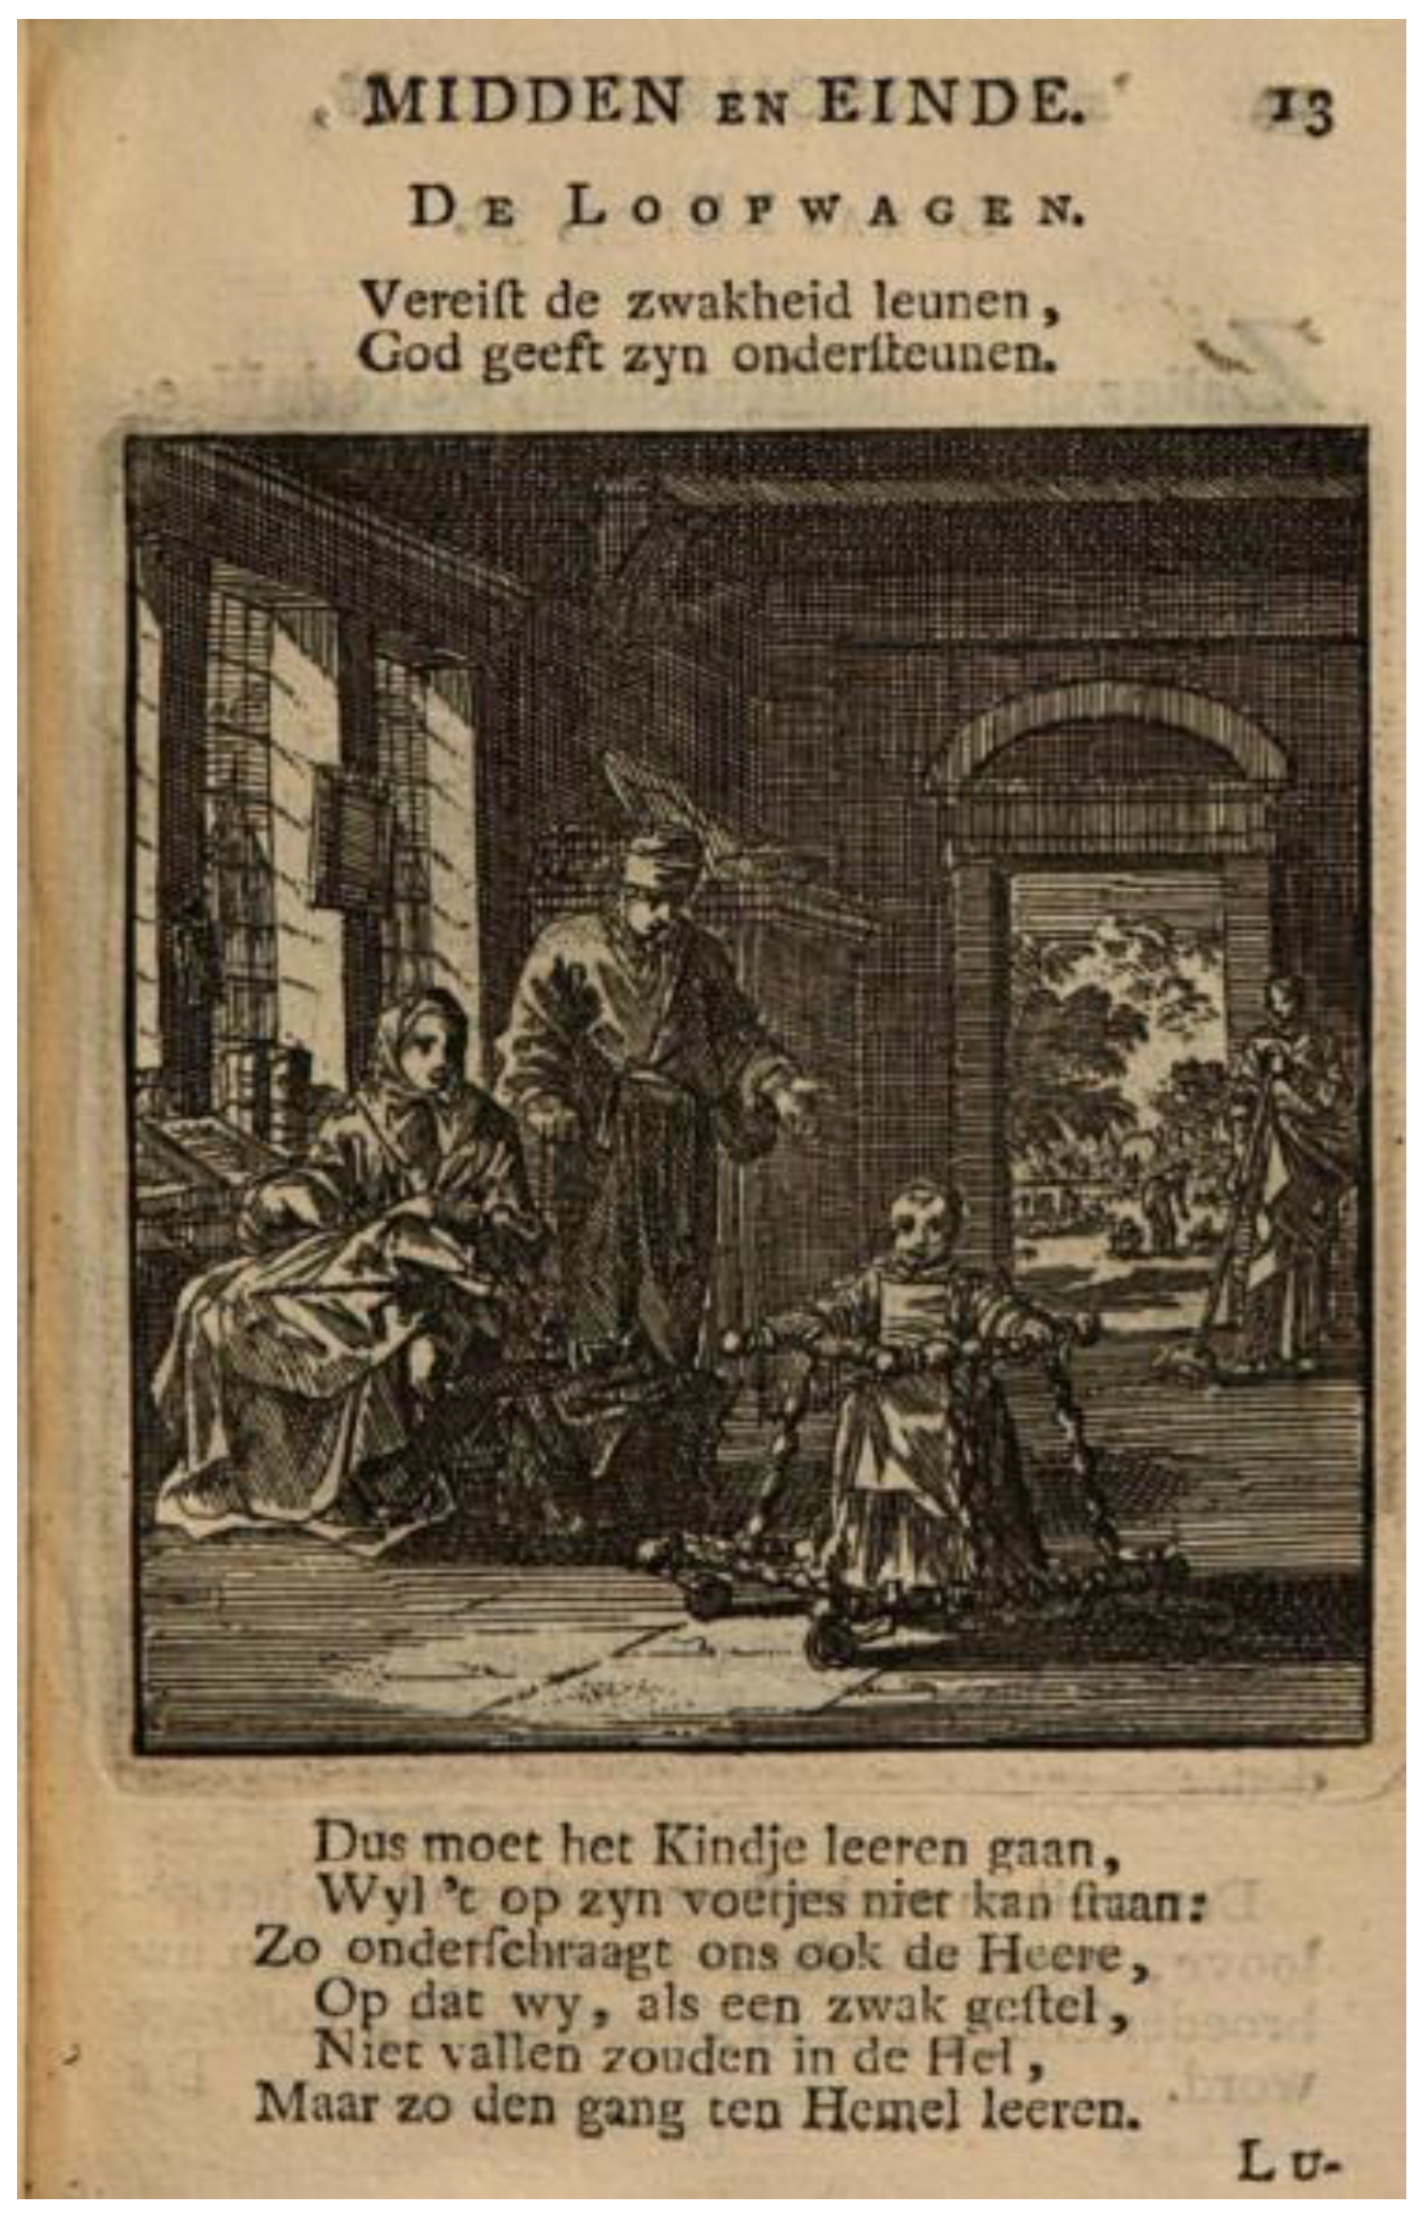 Humanities | Free Full-Text | The Influence of Dutch Genre Painting in  Emblematic Prints: Jan Luyken’s Des Menschen, Begin, Midden en Einde  (1712)